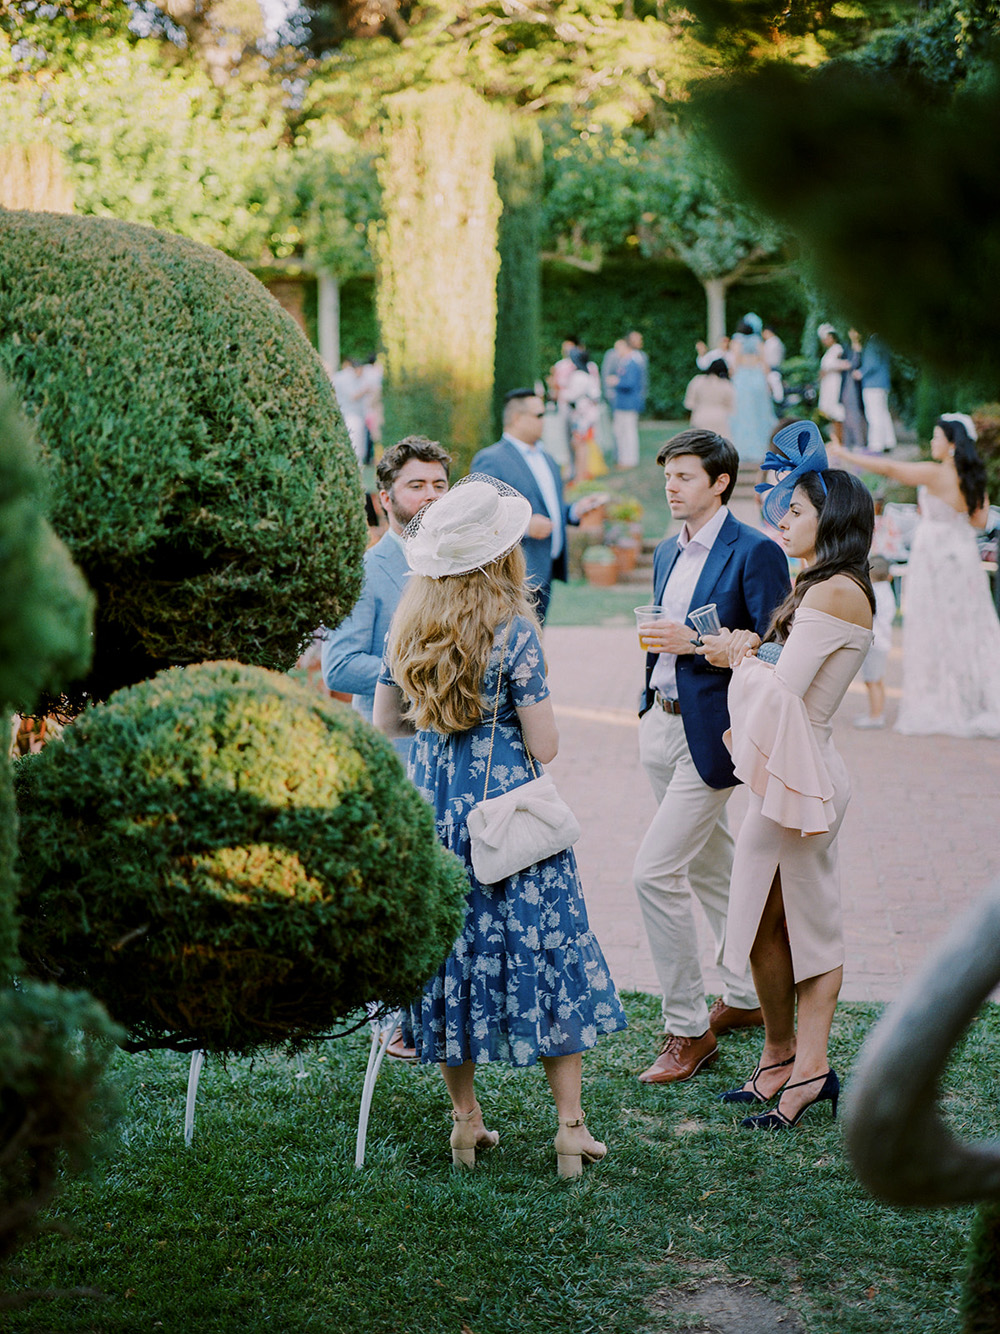 English tea party garden wedding at Filoli Historic House & Garden